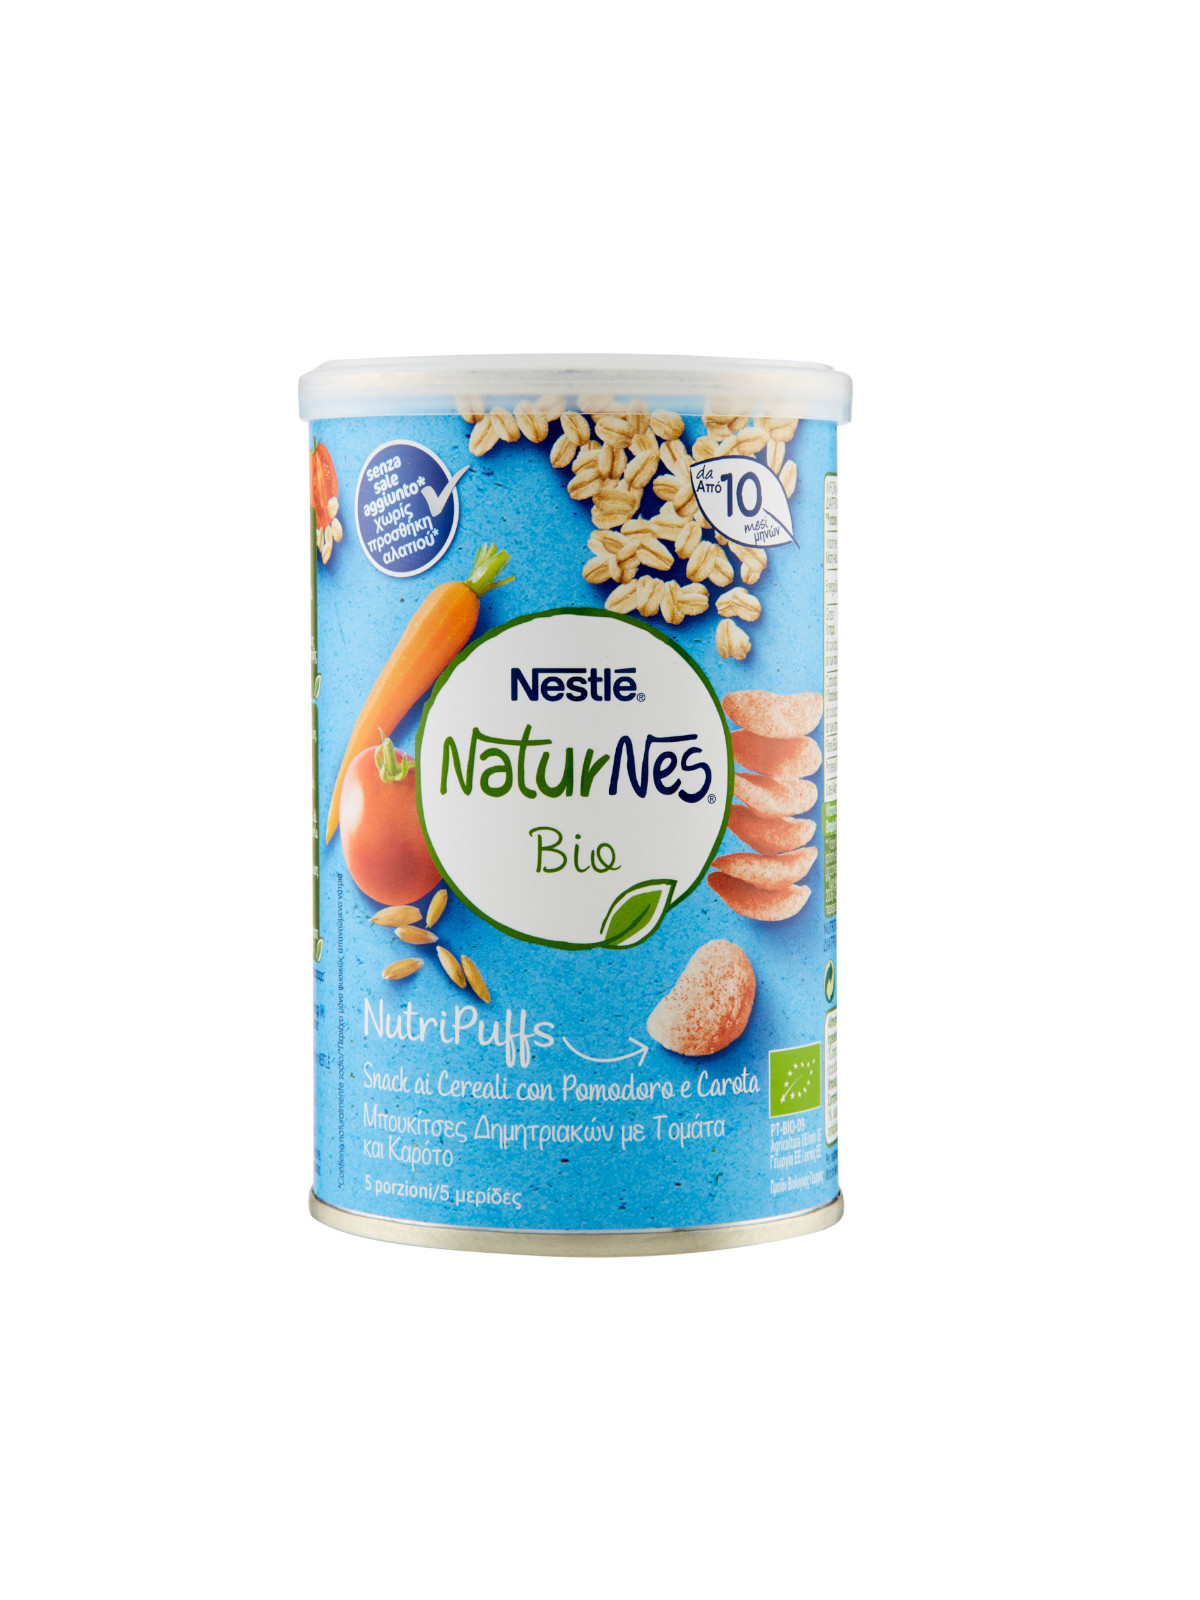 Naturnes - nutripuffs cereali pomo e carota 35gr - NATURNES BIO